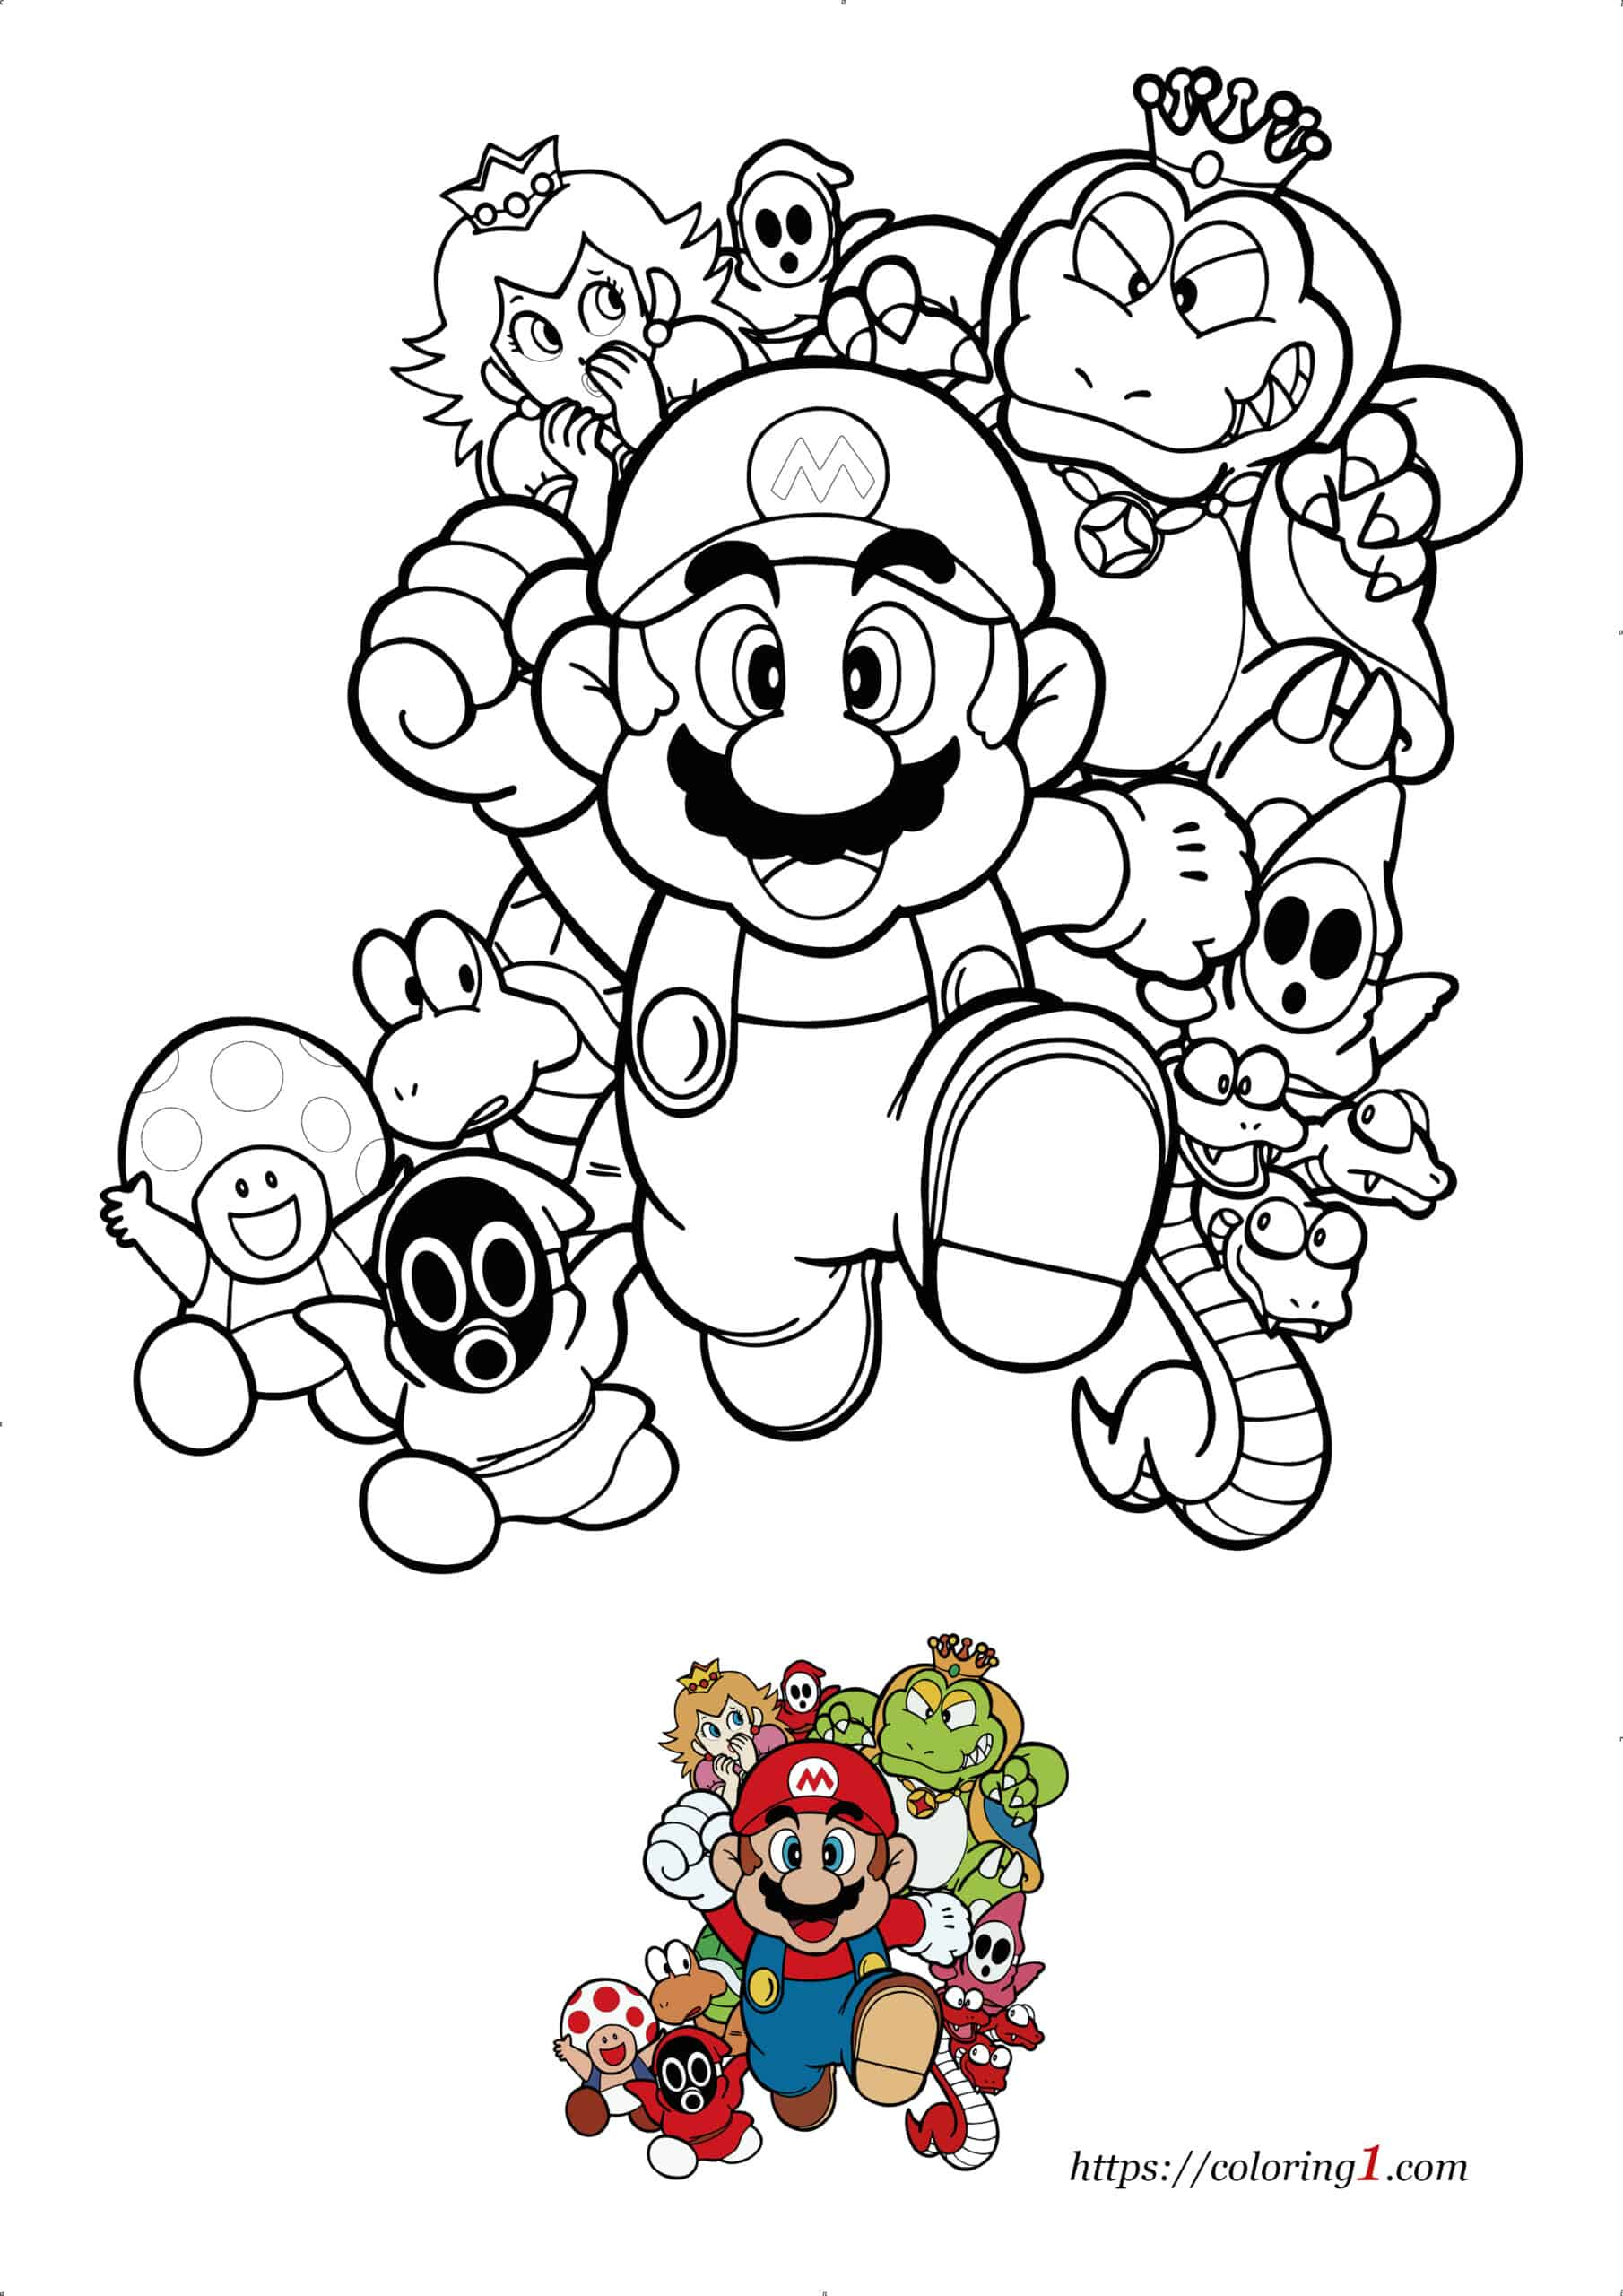 Coloriage Super Mario Bros - Coloriage Gratuit À Imprimer Dessin 2021 intérieur Mario Bros Dessin